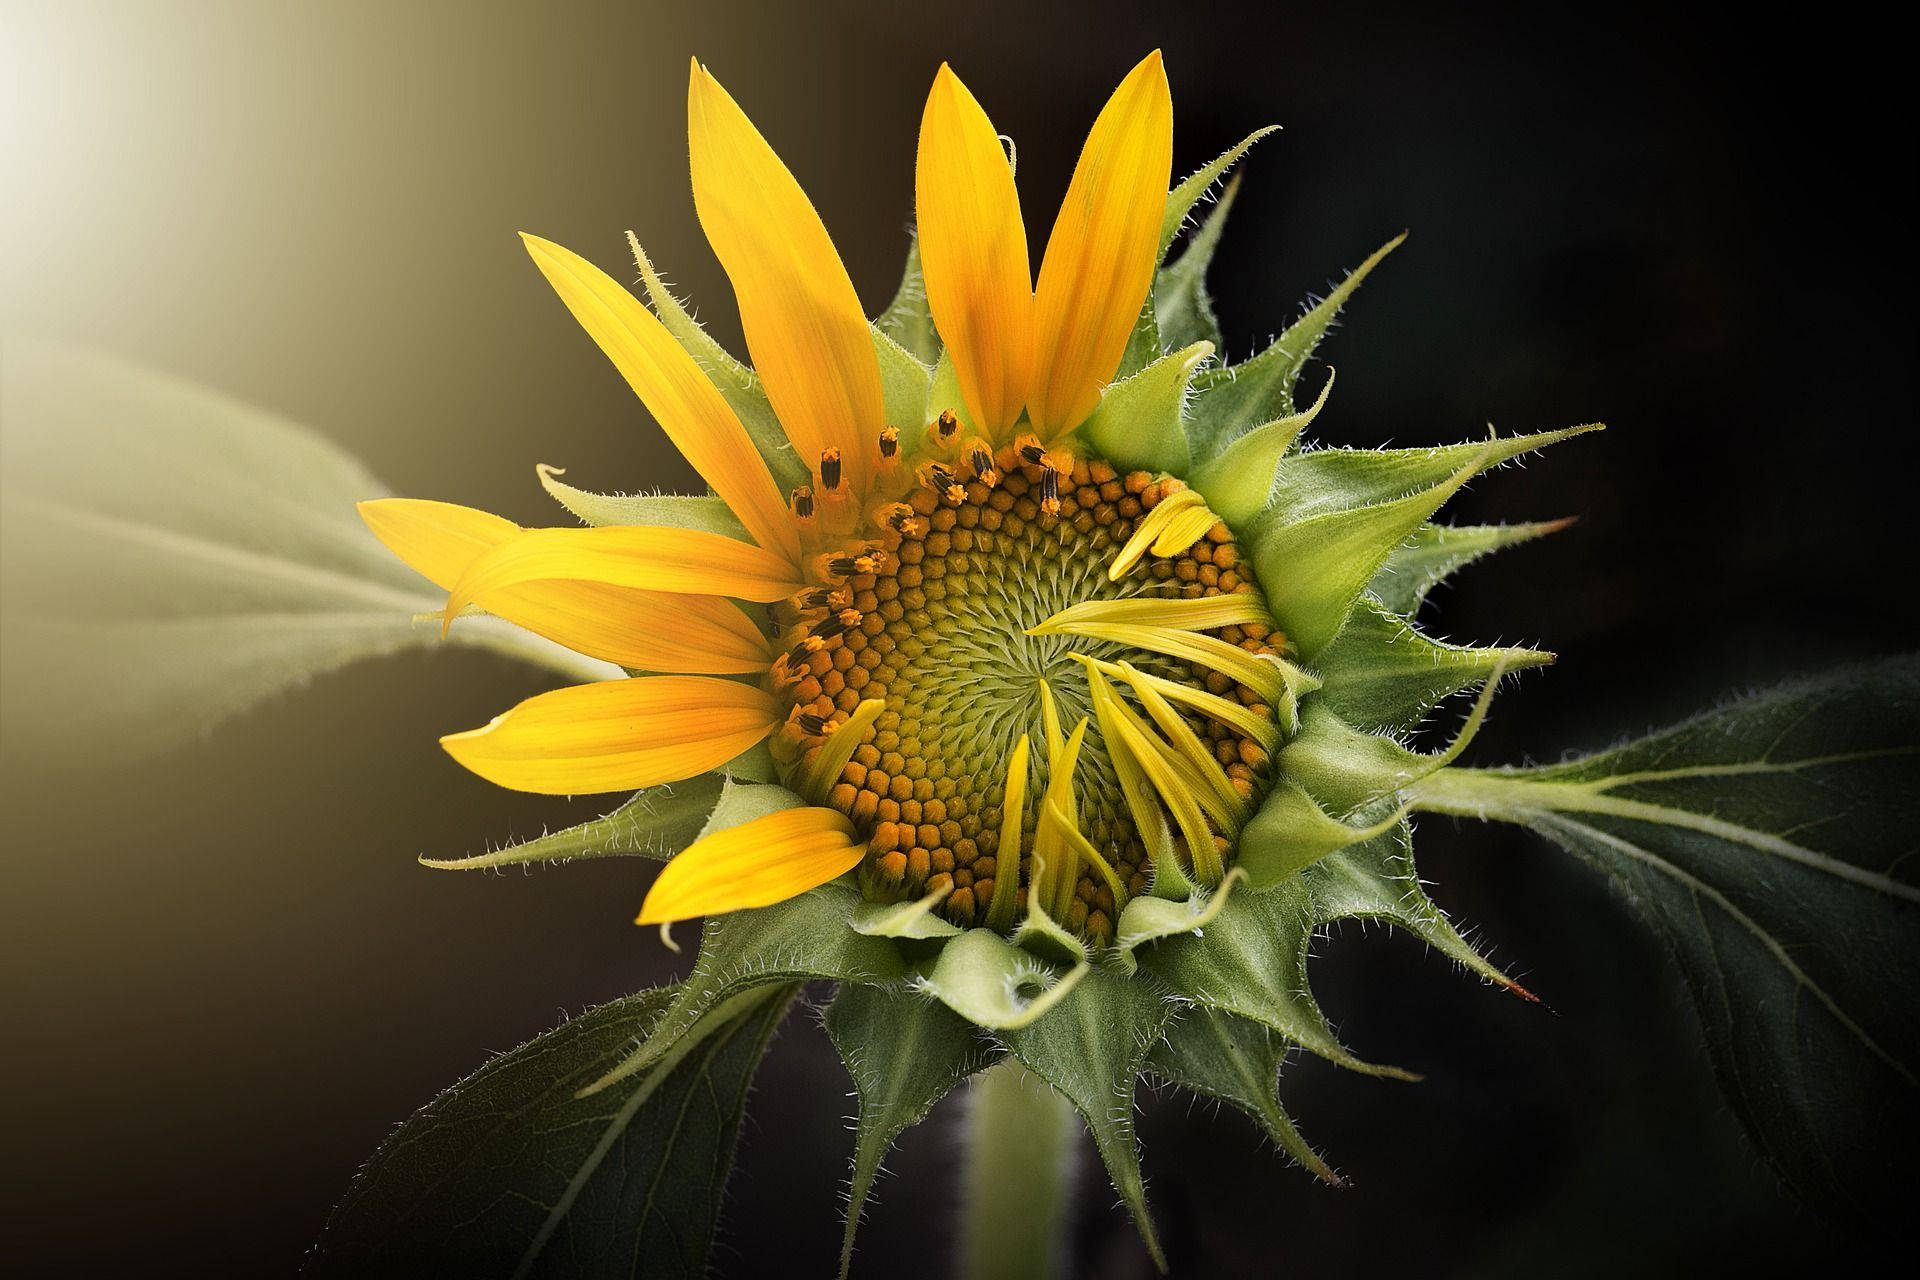 Trending Mystery Mega Sunflower